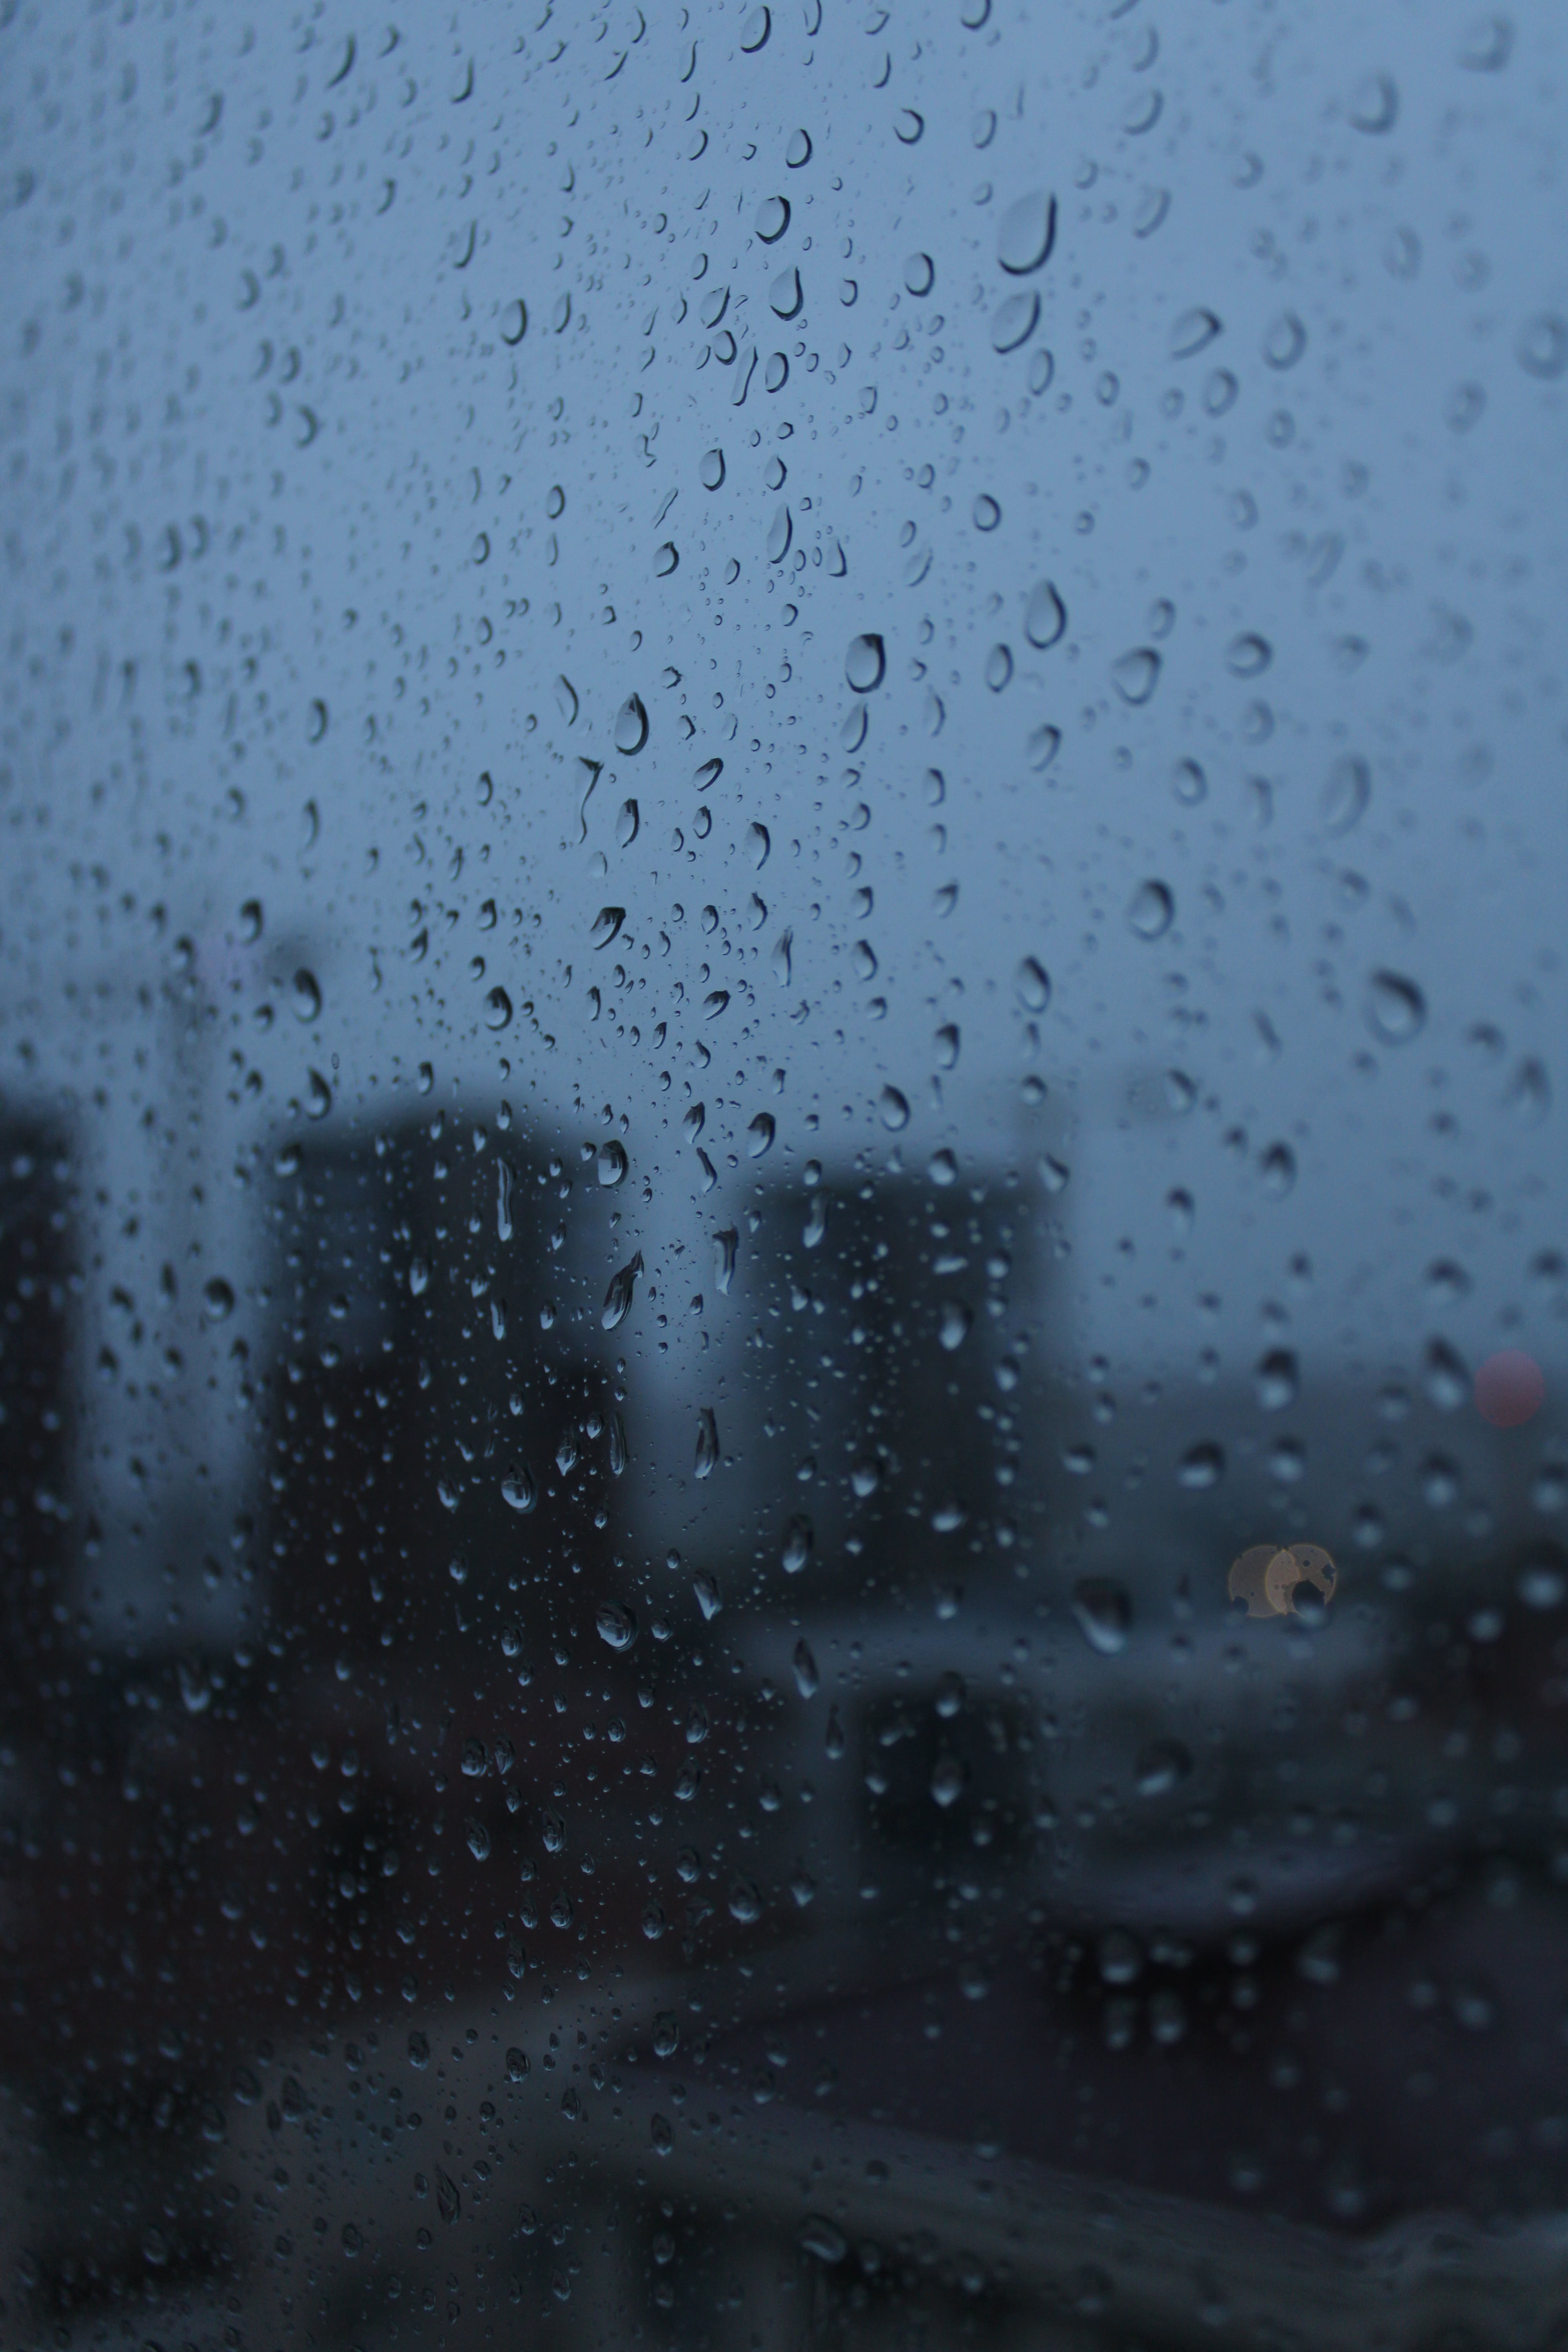  Regen Hintergrundbild 4000x6000. Kostenloses Foto zum Thema: fenster, glas, nass, regen, regnen, tröpfchen, tür, unscharfer hintergrund, vertikaler schuss, wasser